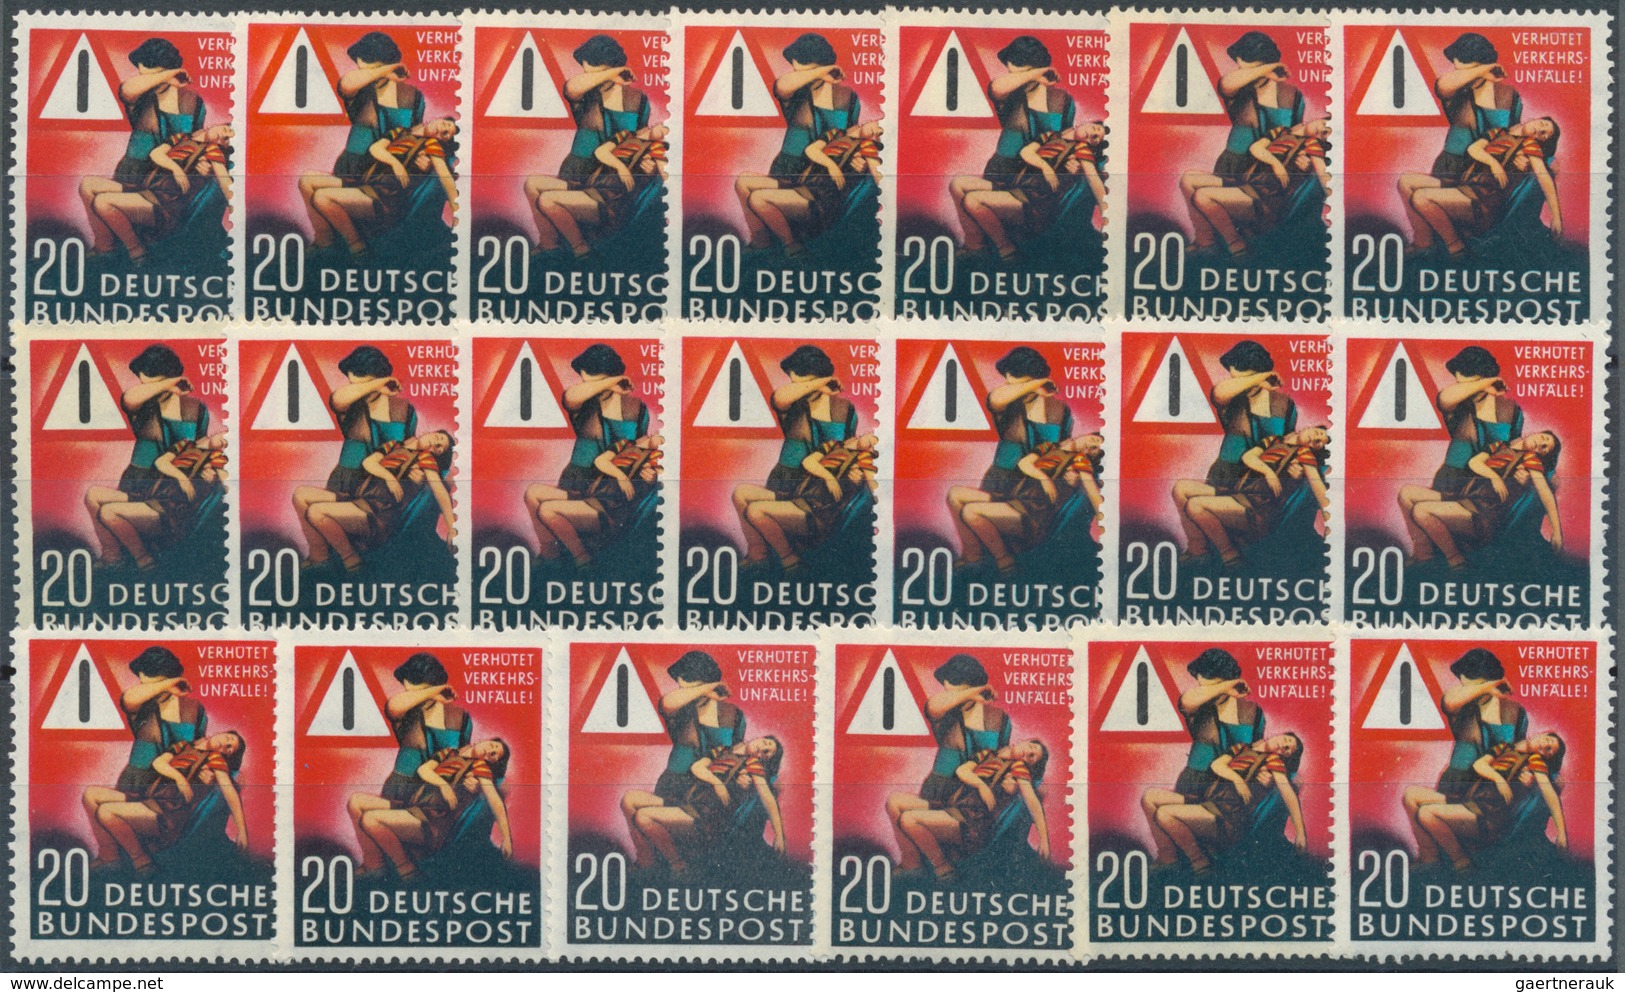 Bundesrepublik Deutschland: 1953, Unfallverhütung Per 136mal Postfrisch. MiNr. 162, 2.448,- €. - Sammlungen